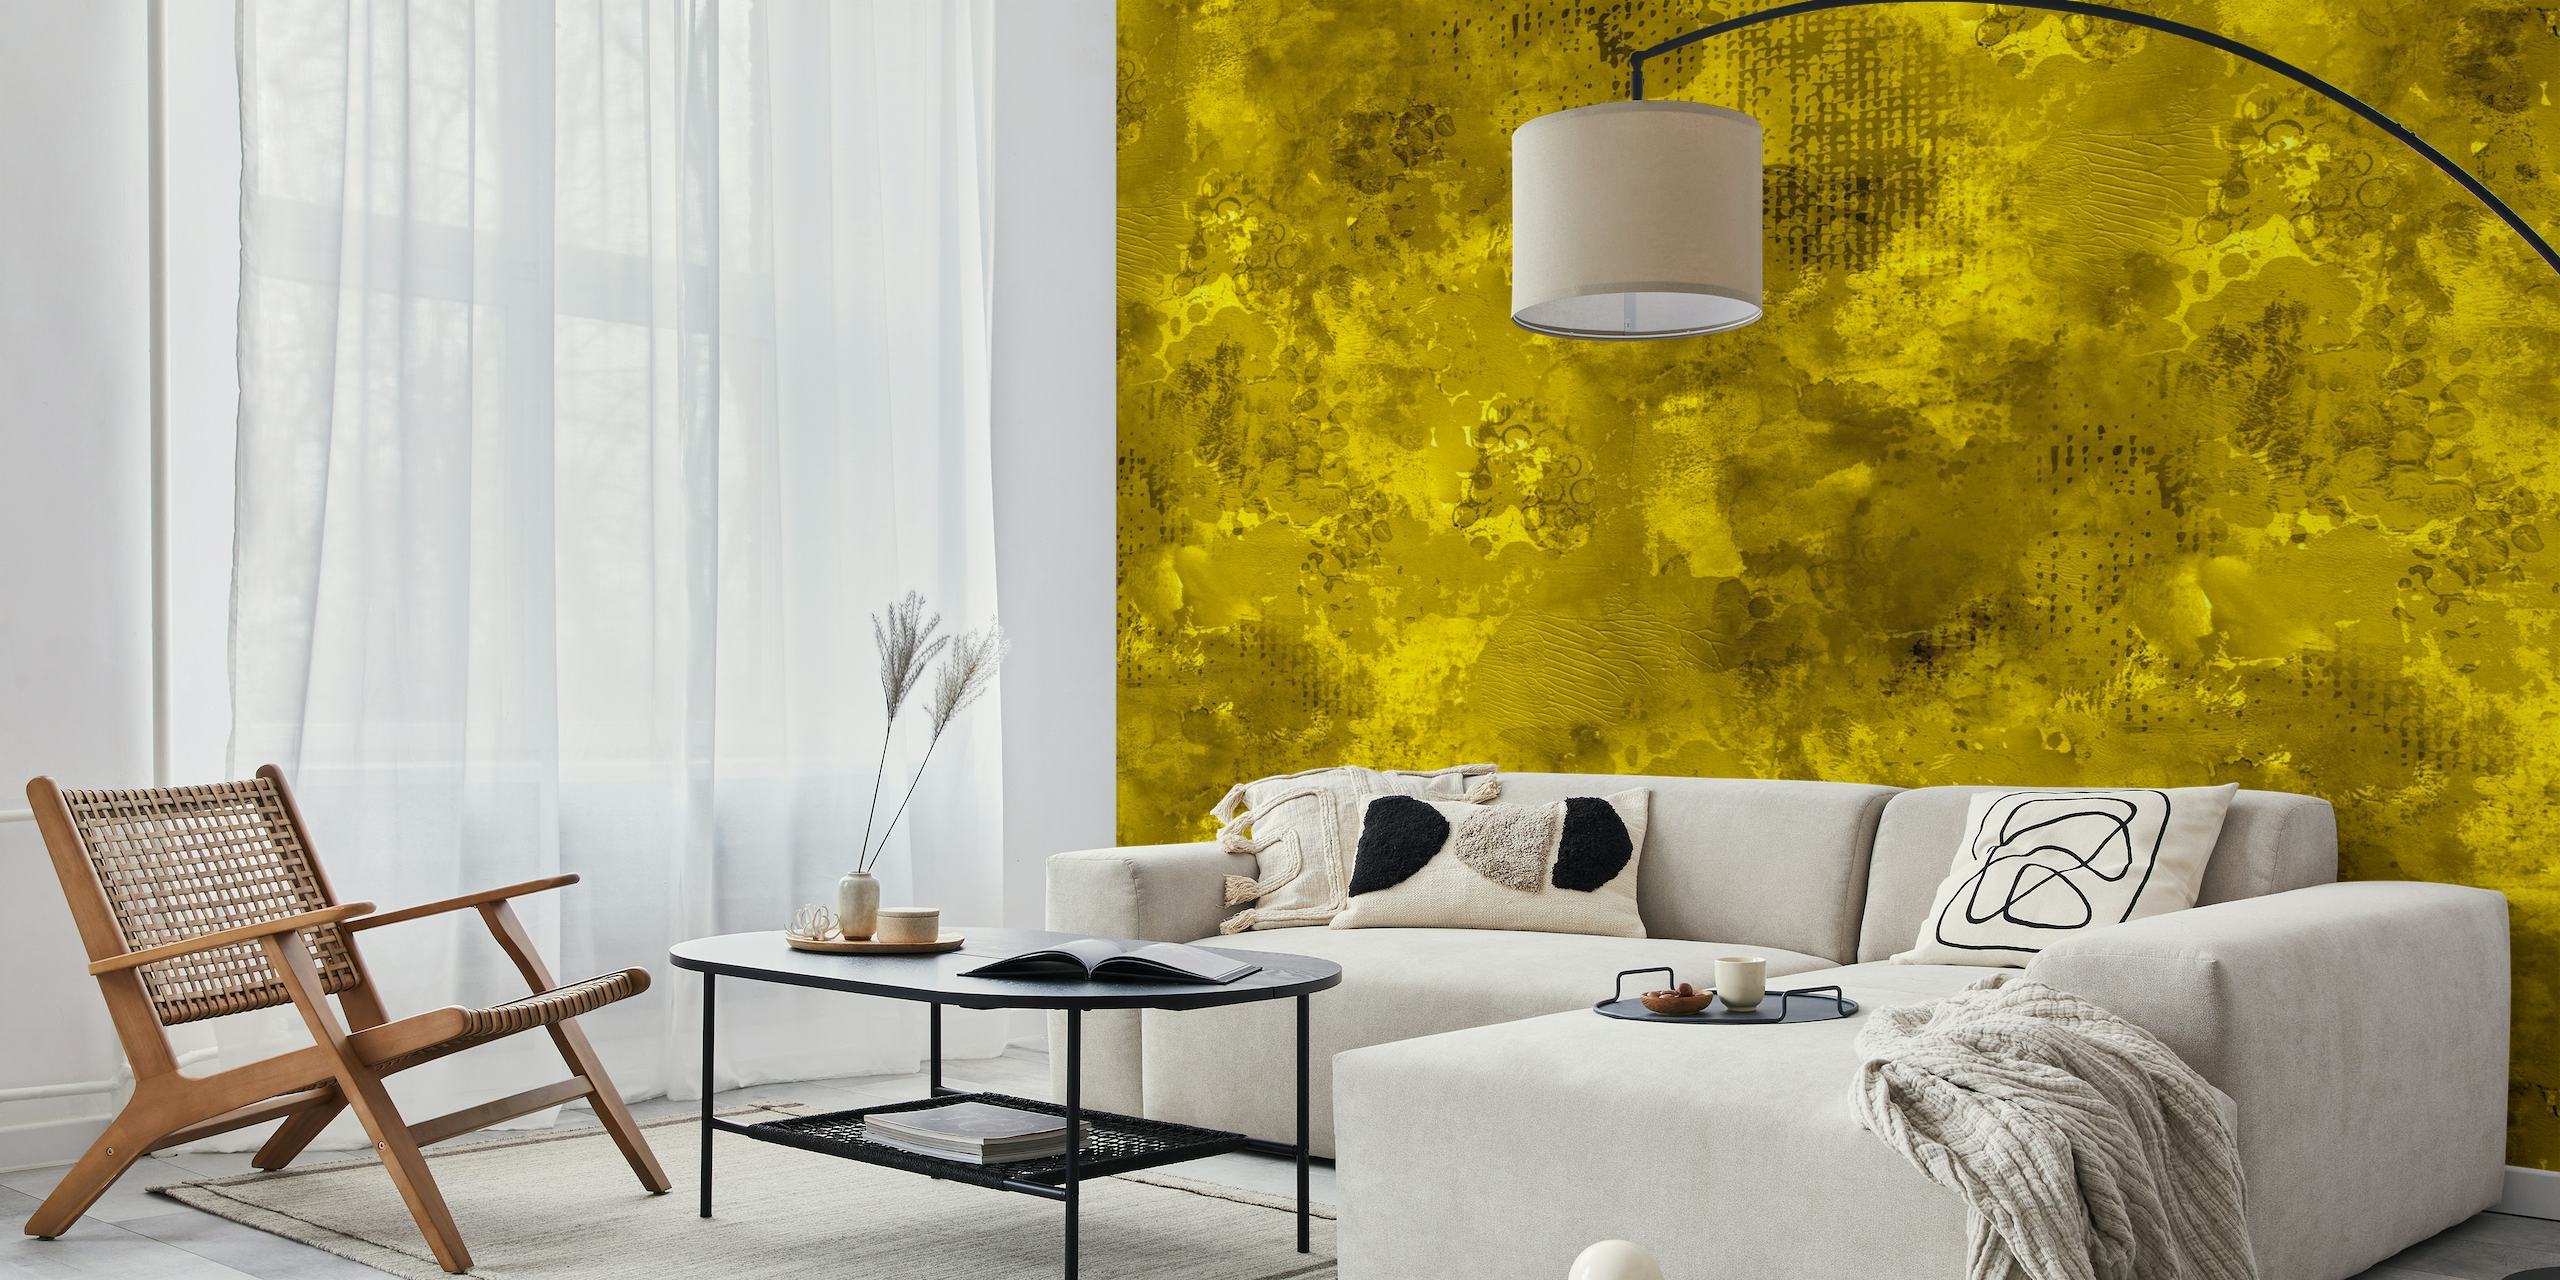 Papier peint mural dynamique et audacieux avec texture de peinture jaune abstraite moderne créant une déclaration visuelle vive.